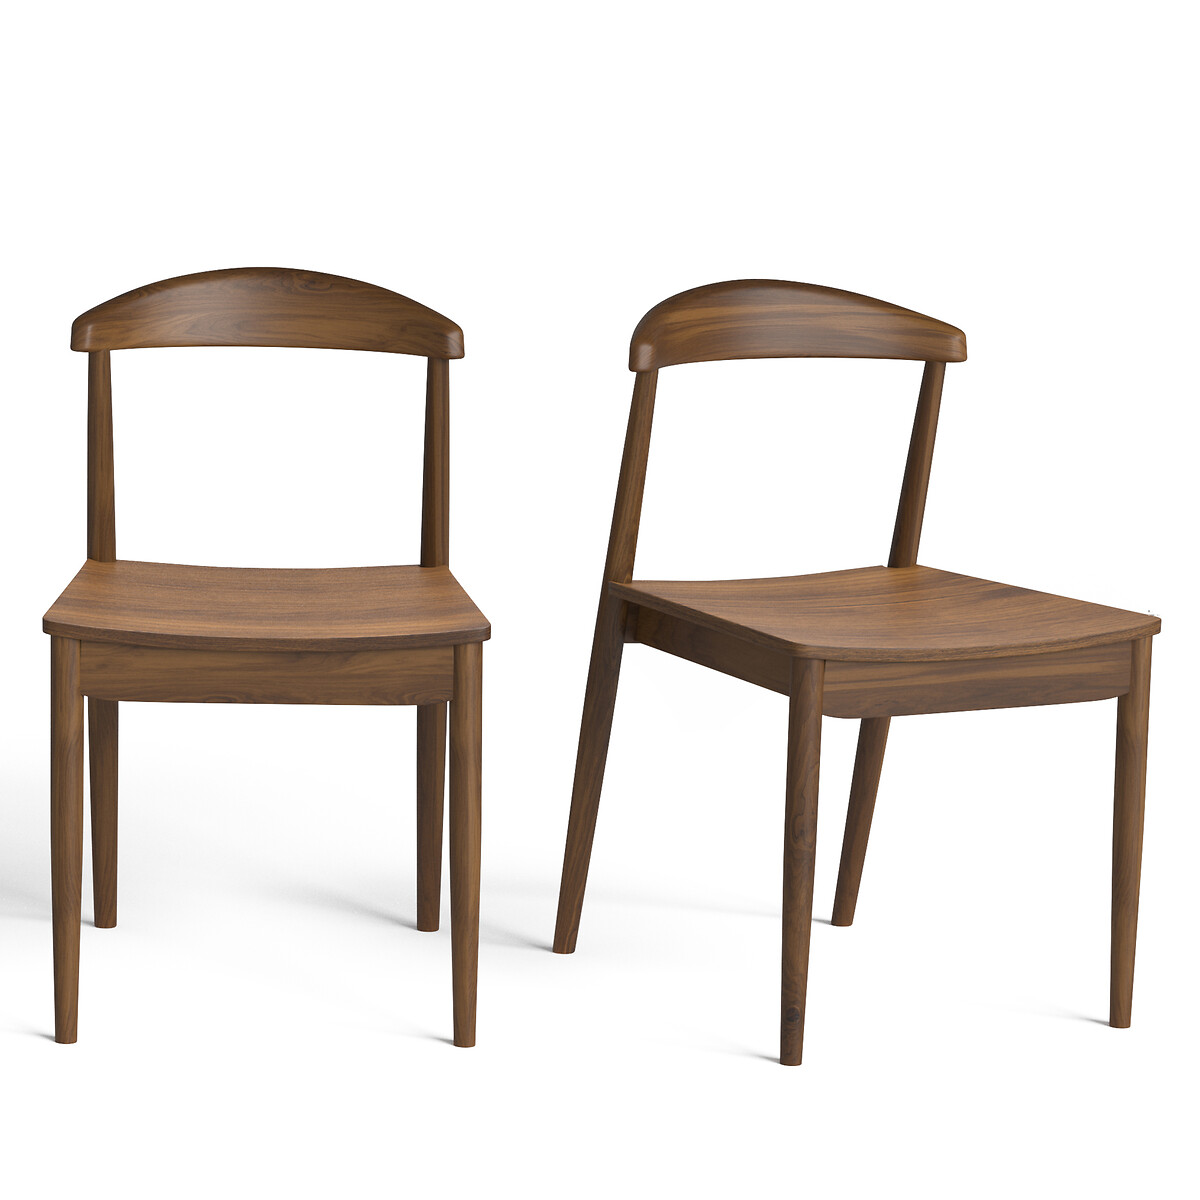 Комплект из 2 стульев, Galb La Redoute комплект из 2 каштановый комплект из 2 стульев galb la redoute комплект из 2 бежевый